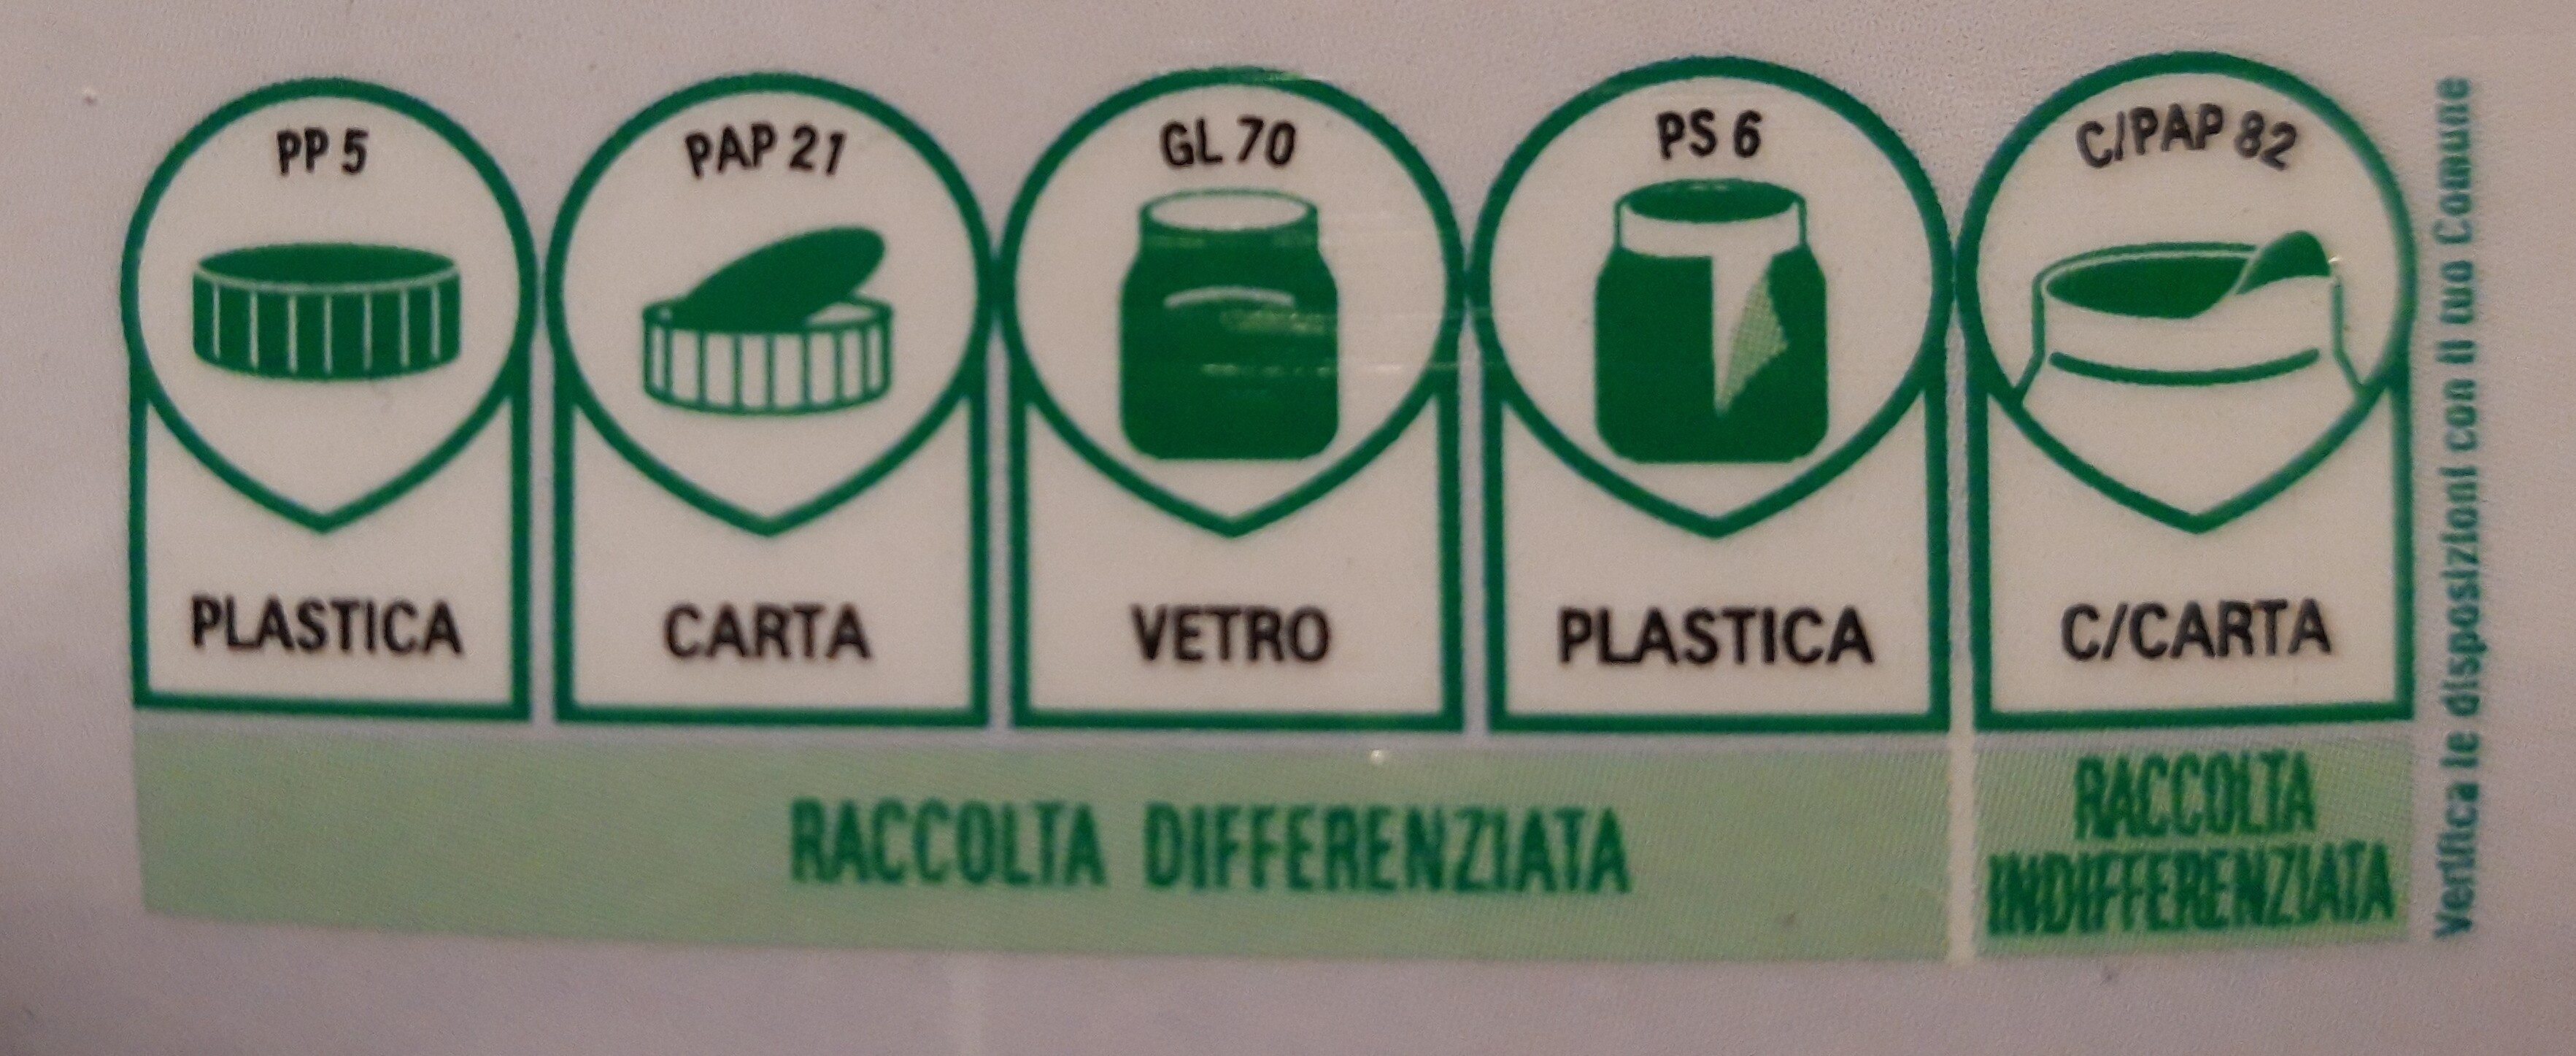 Nutella - Istruzioni per il riciclaggio e/o informazioni sull'imballaggio